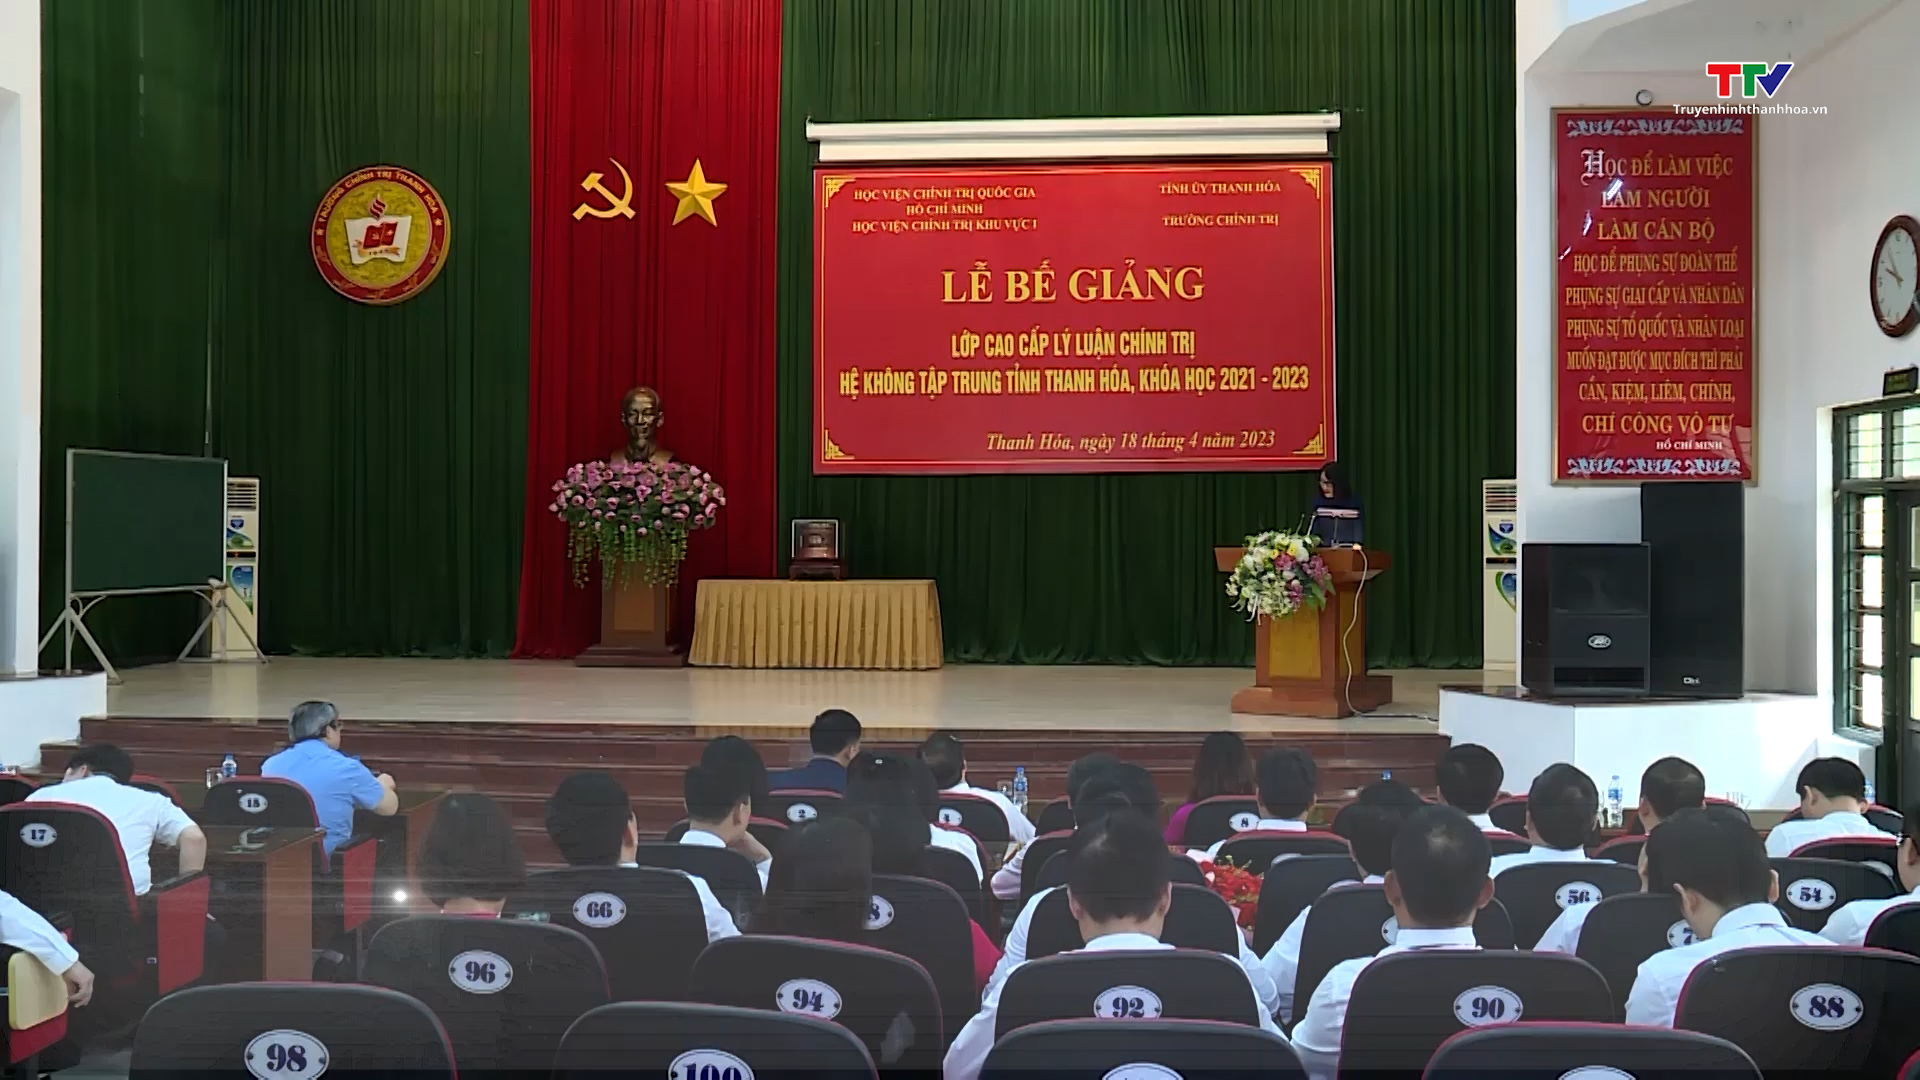 Bế giảng lớp Cao cấp Lý luận chính trị hệ không tập trung tỉnh Thanh Hóa (Khóa học 2021-2023)
 - Ảnh 2.